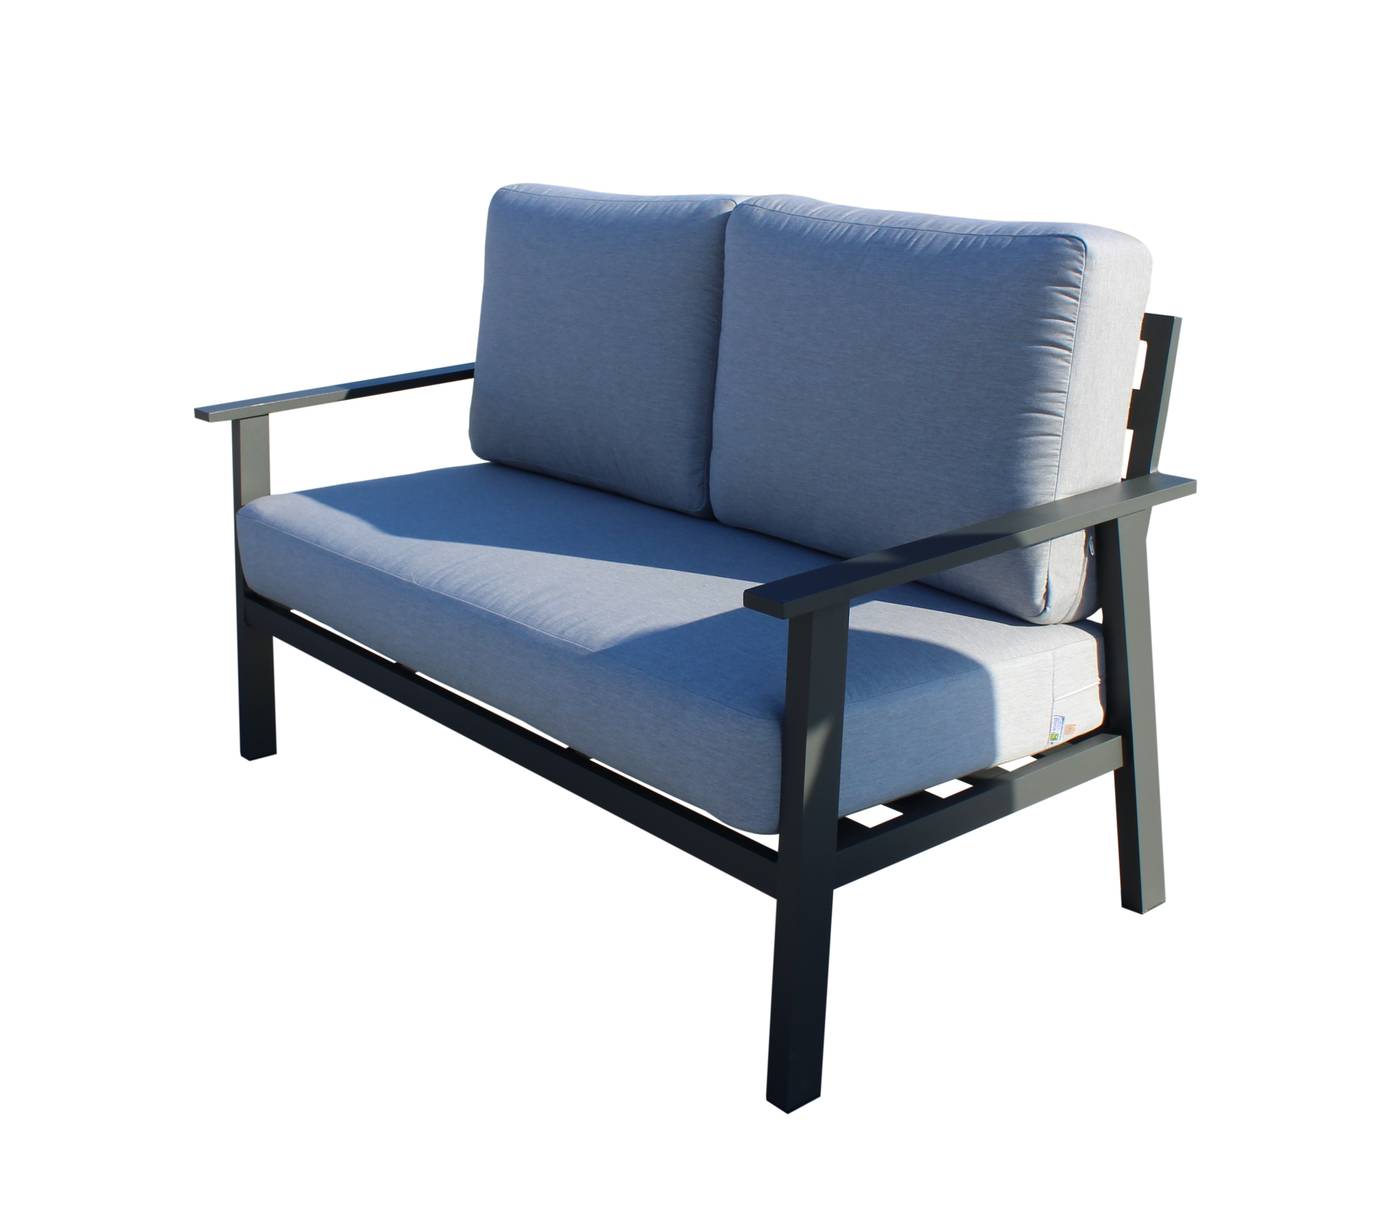 Set Aluminio Eliot-7 - Conjunto aluminio: sofá 2 plazas + 2 sillones + mesa de centro. Fabricado de aluminio en color blanco o antracita.